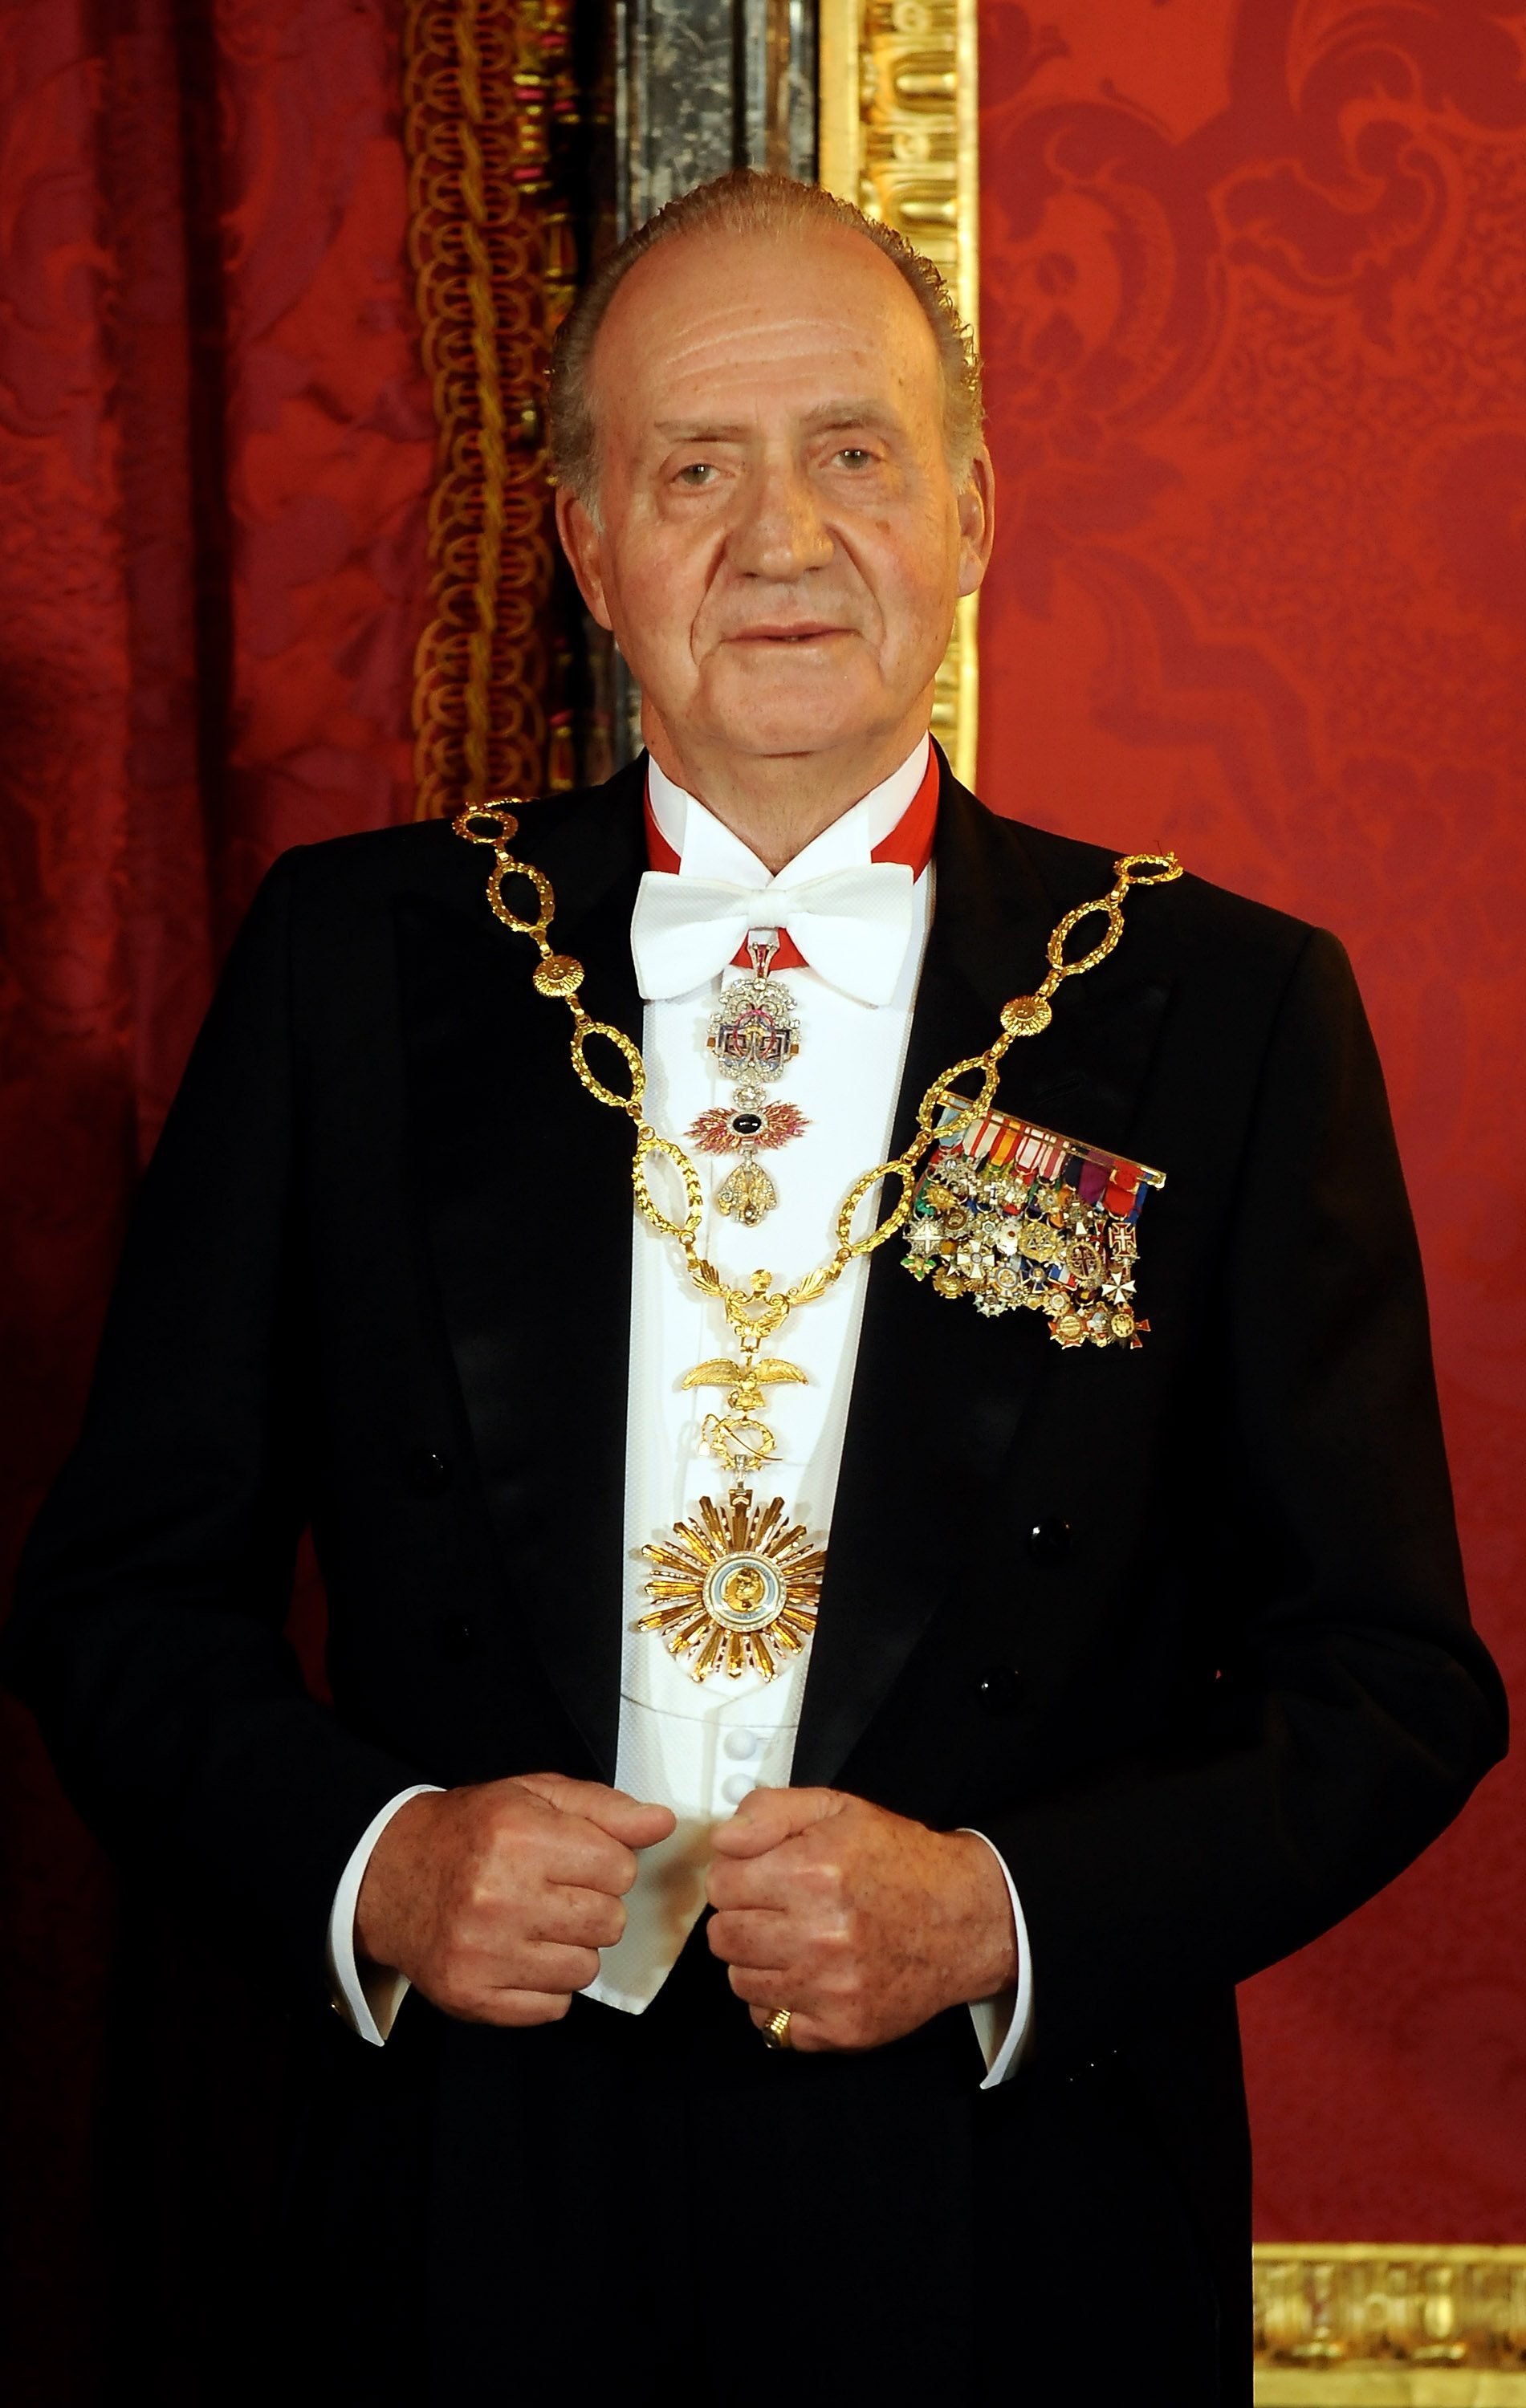 O antigo líder espanhol, o Rei Juan Carlos de Espanha